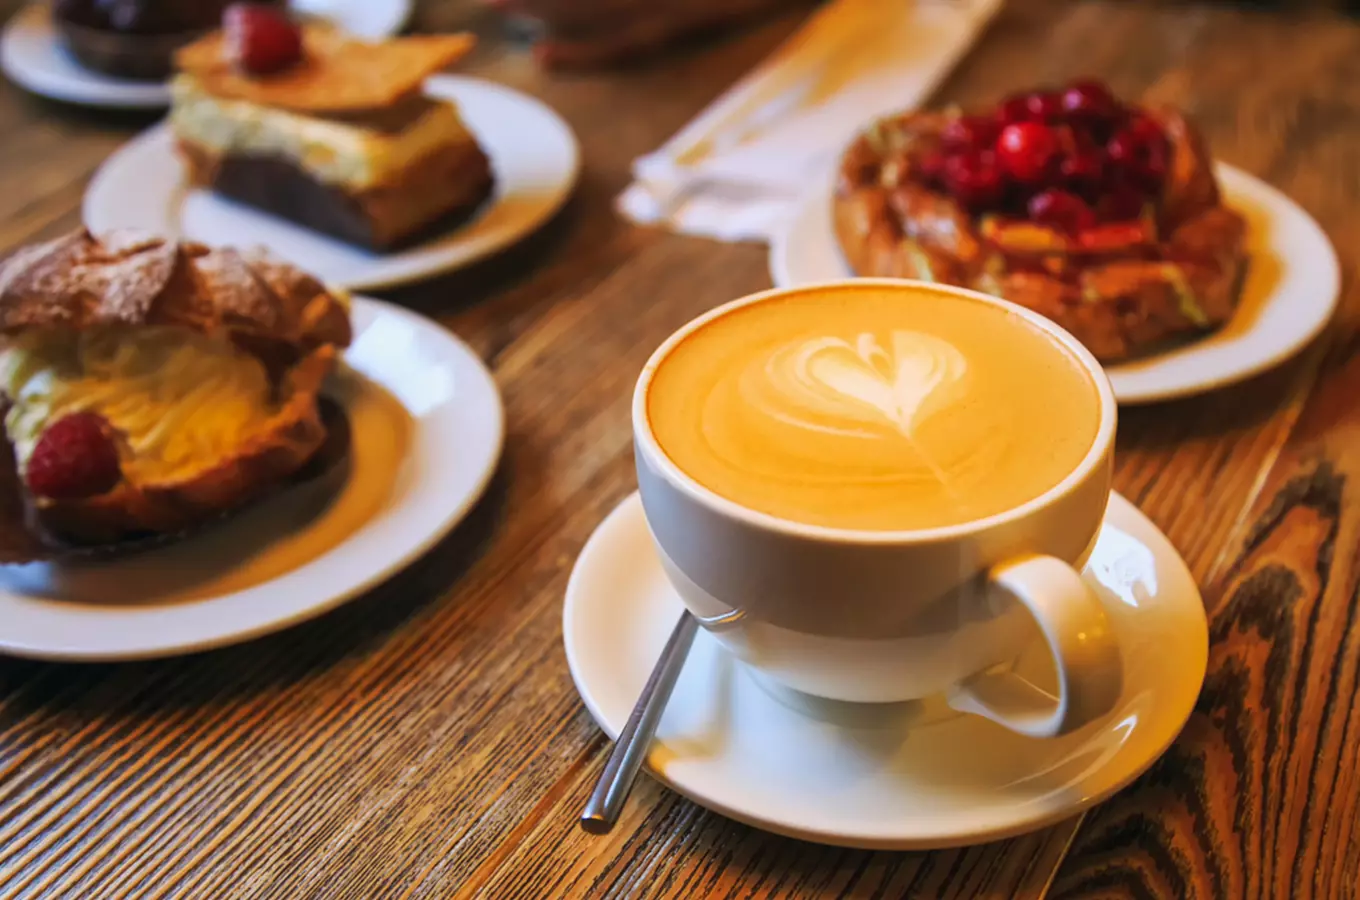 Objevte osobité kavárny, které lákají nejen na dobrou kávu